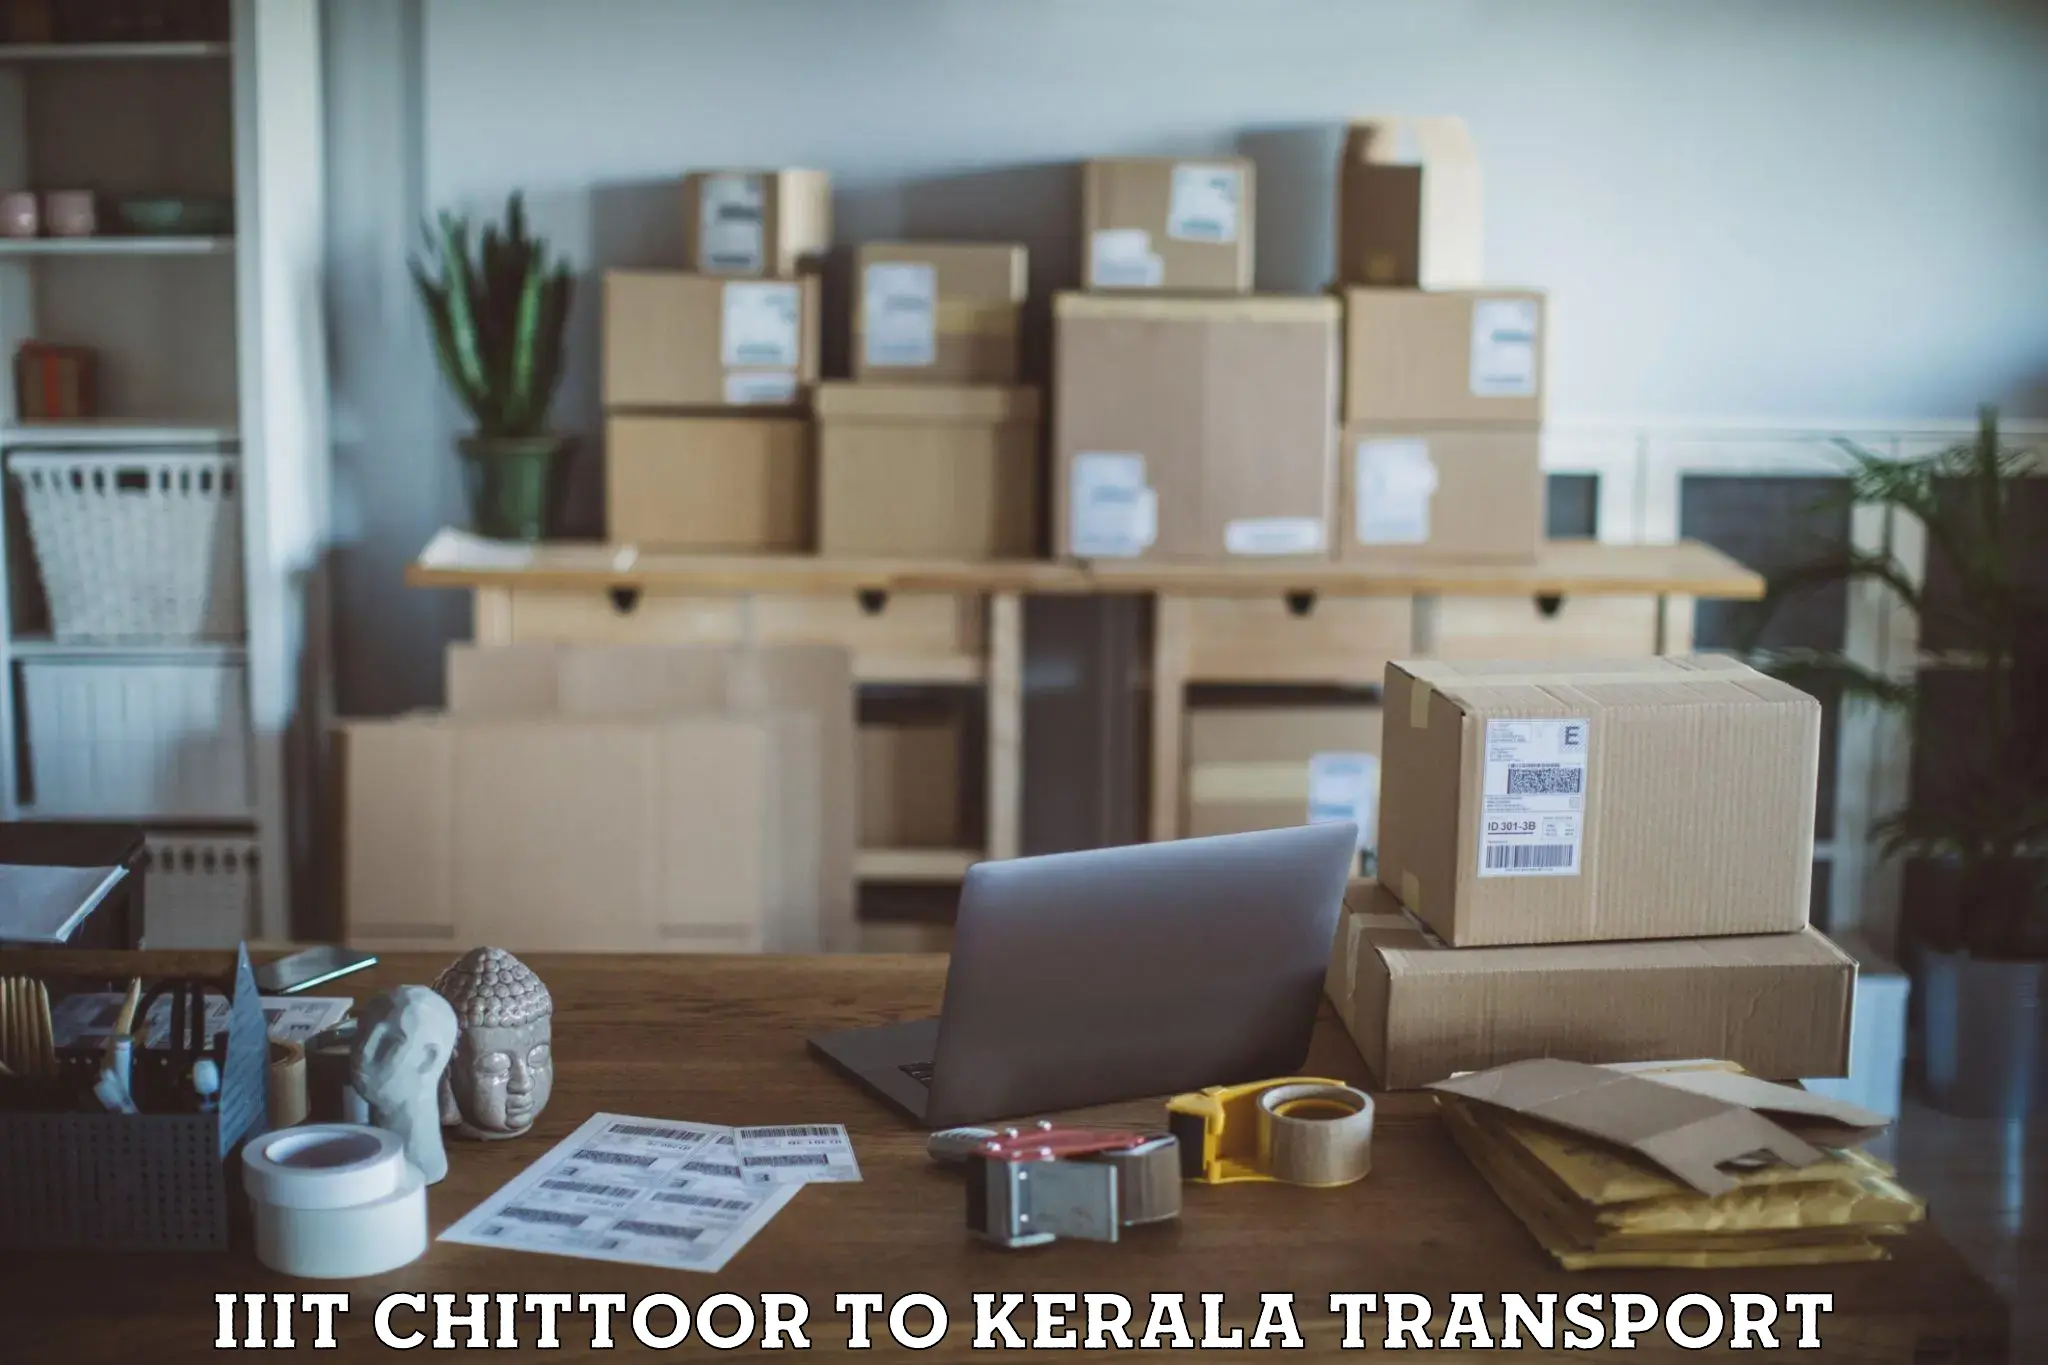 Transport services IIIT Chittoor to Tiruvalla